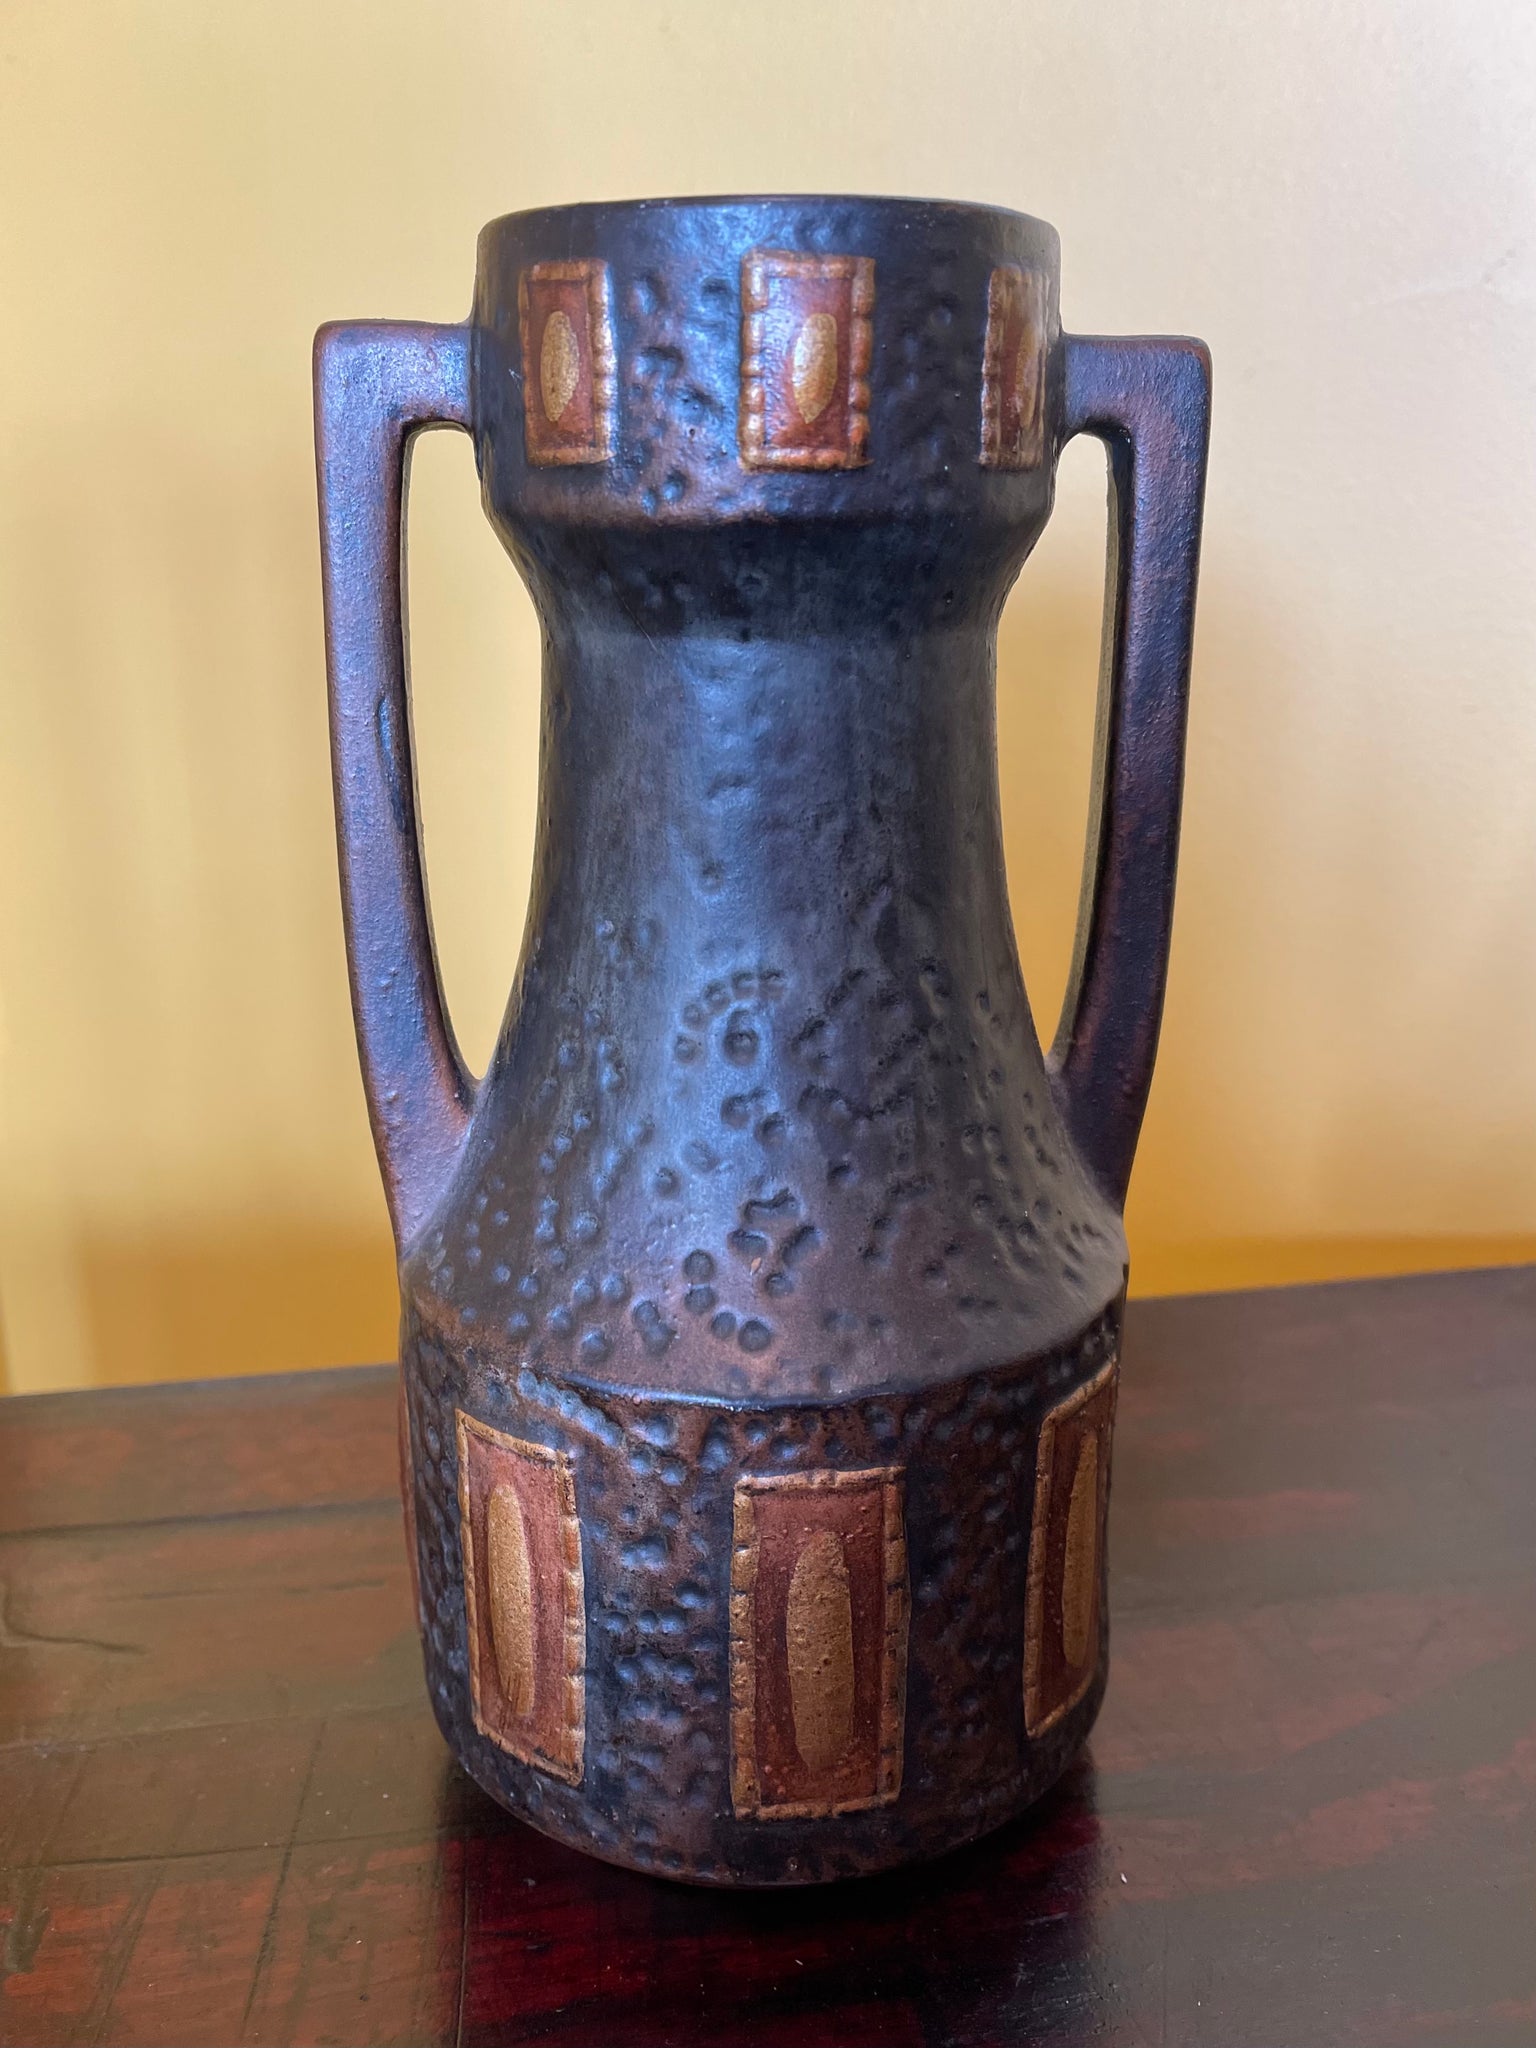 BRETBY Clanta Vase 1914 - 20